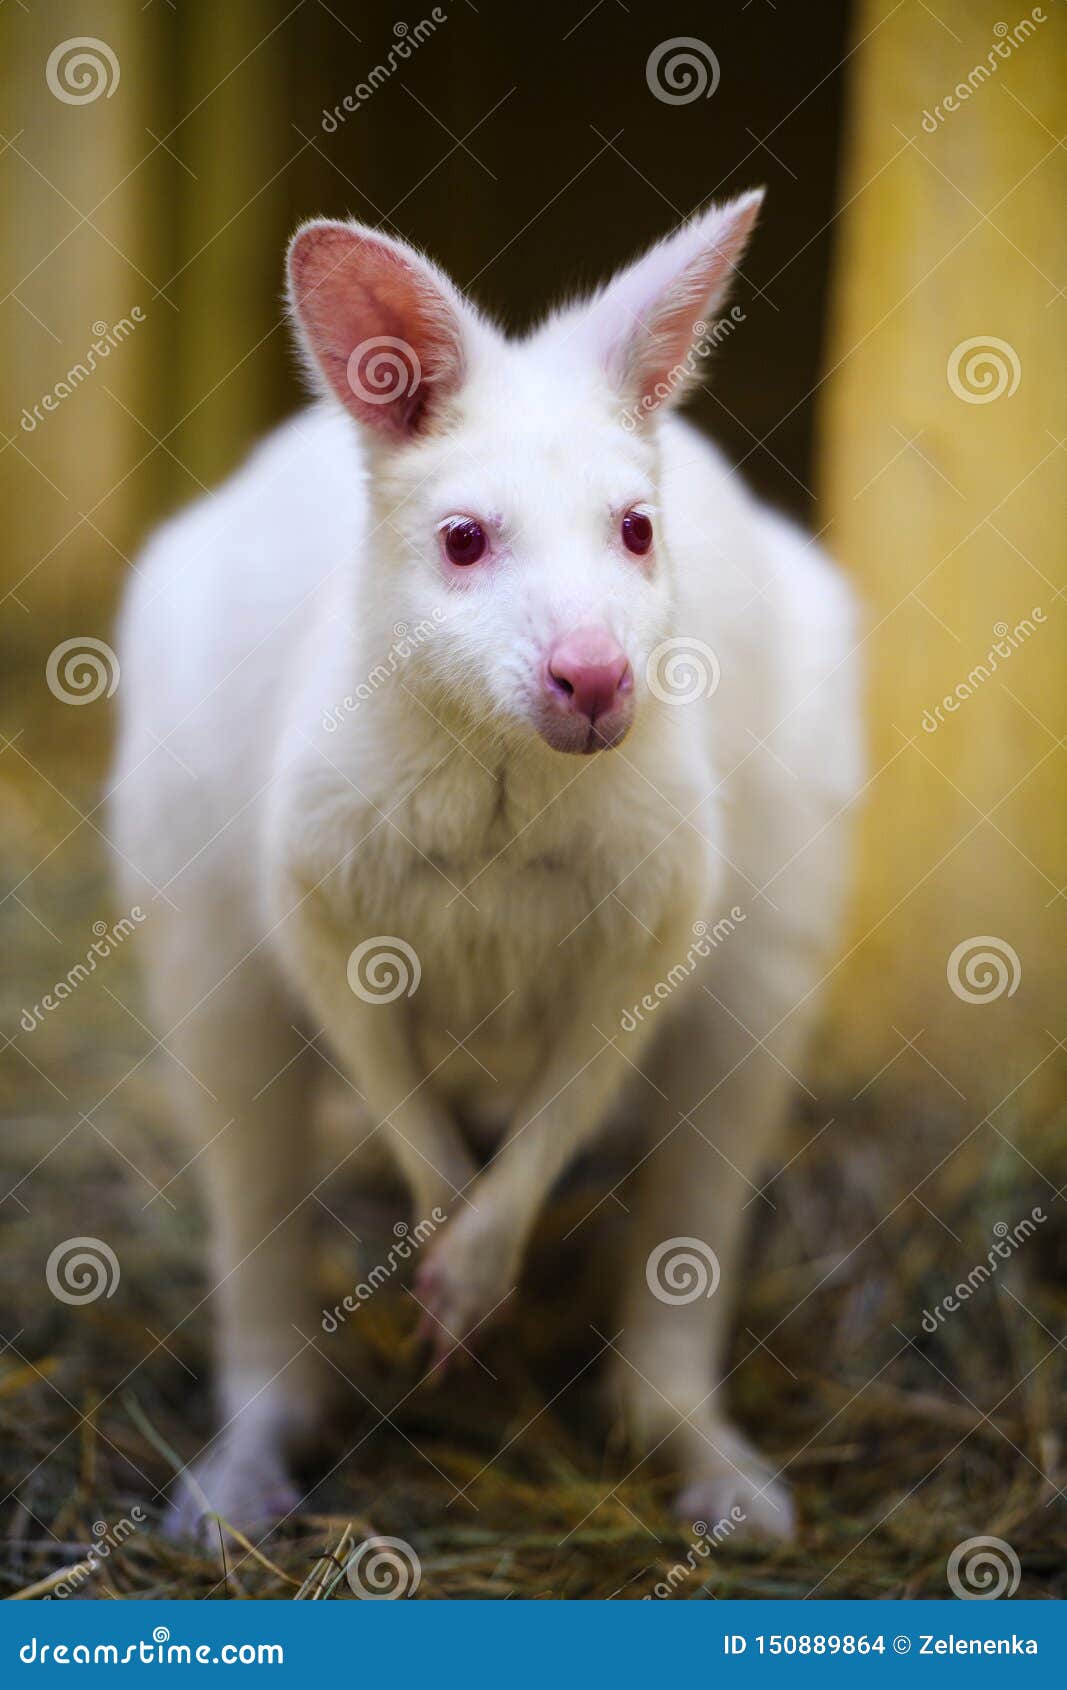 Tưởng tượng một con Kangaroo trắng biến thành người bạn đồng hành, khi bạn khám phá thế giới của khu vực vườn thú. Tất cả mọi thứ cũng sẽ trở nên sáng sủa hơn khi có nét đặc trưng đầy nghị lực của loại động vật này.